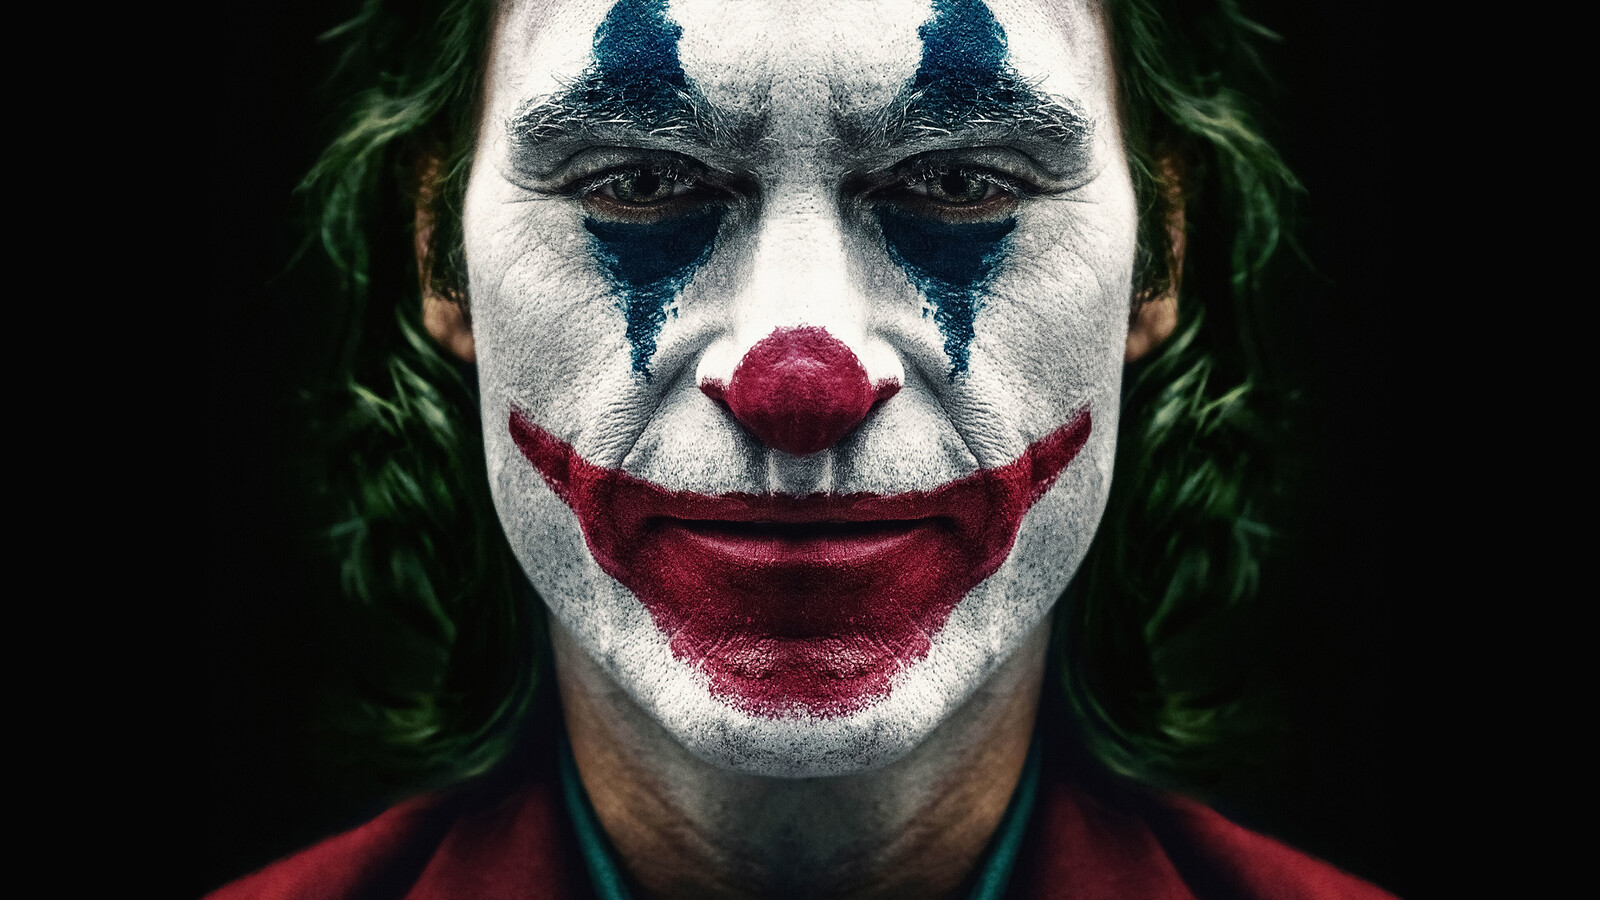 1600x900 Joker 2019 Joaquin Phoenix Clown 1600x900 Resolution HD ...